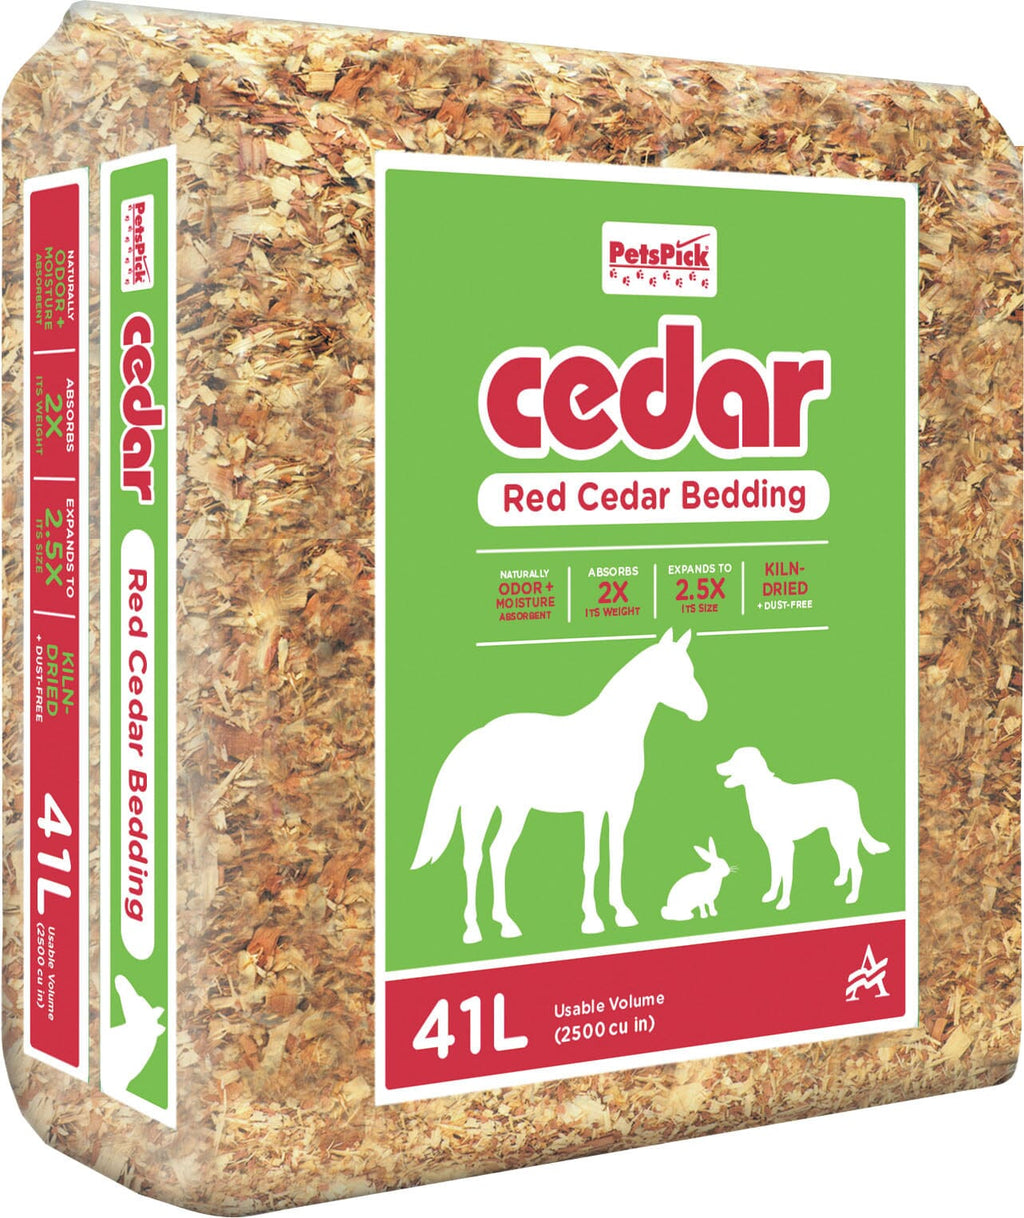 Pet's Pick Kiln Dried Red Cedar Bedding - Red Cedar - 41 L  